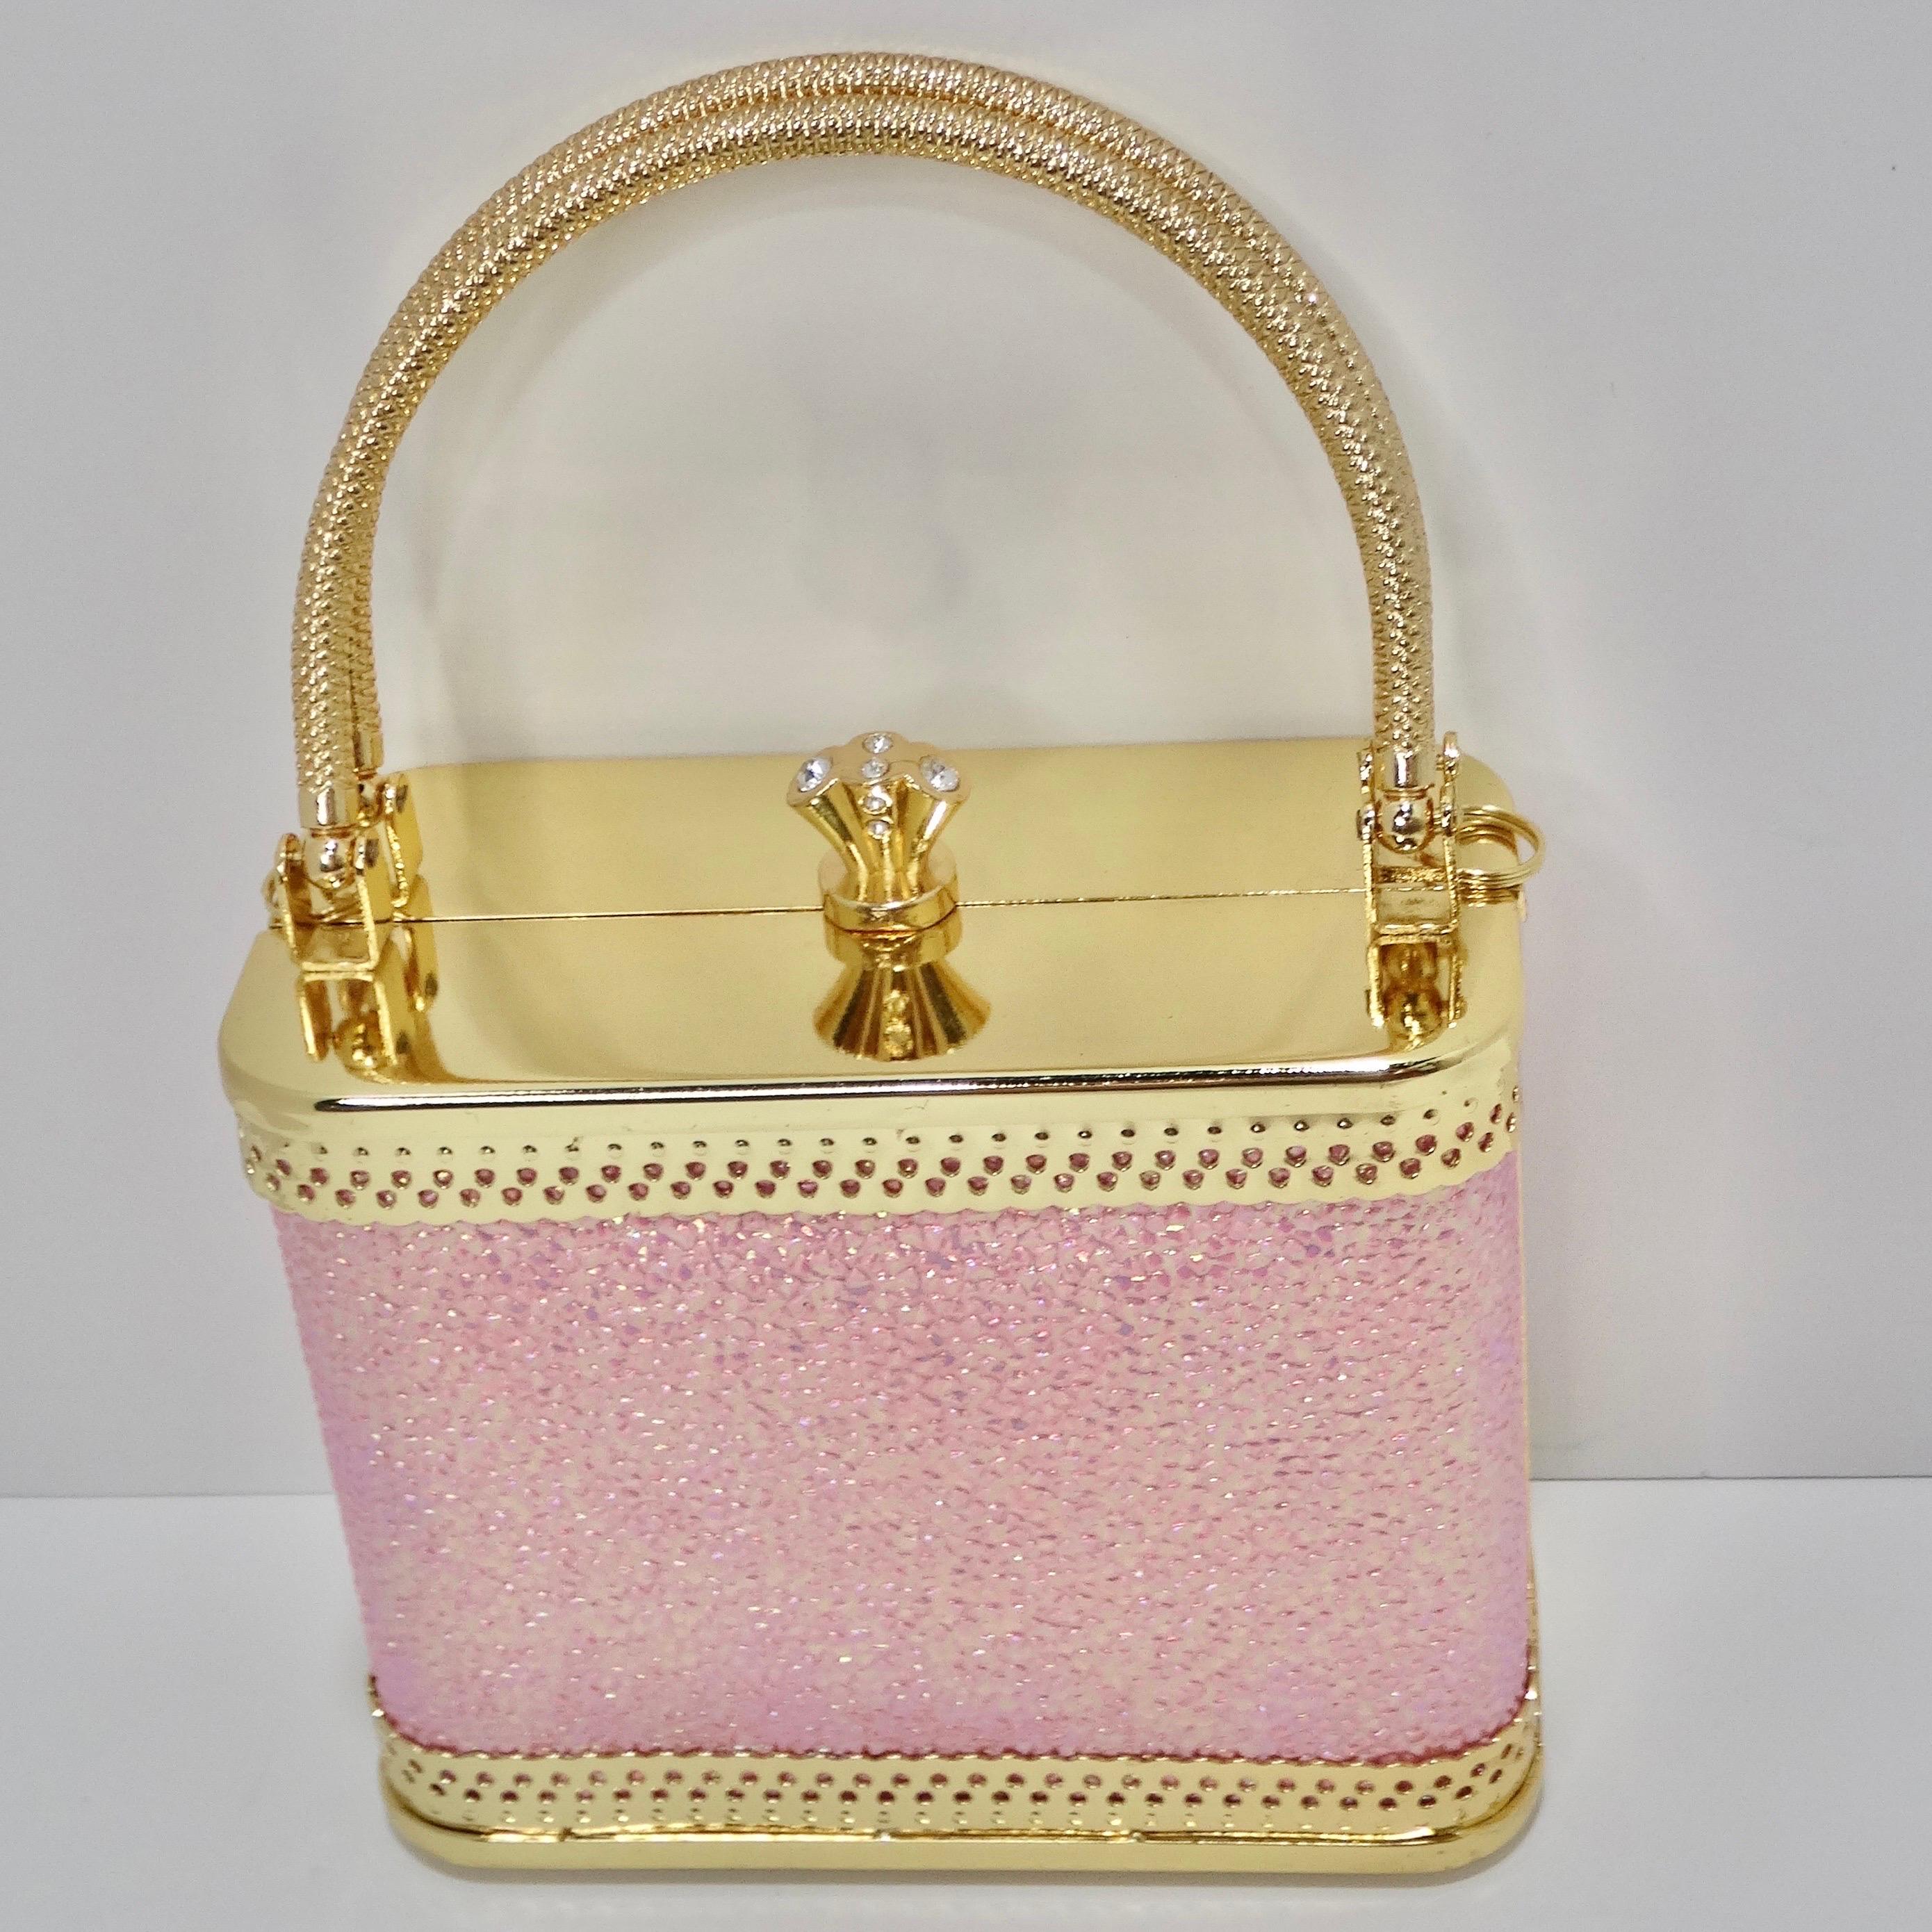 Ce mini-sac à main rose à paillettes de Colleen Lopez est vraiment adorable ! Accessoire de sortie idéal pour compléter votre look, cette pochette de style minaudière présente un contraste d'or plaqué et de rose scintillant qui attire l'attention.